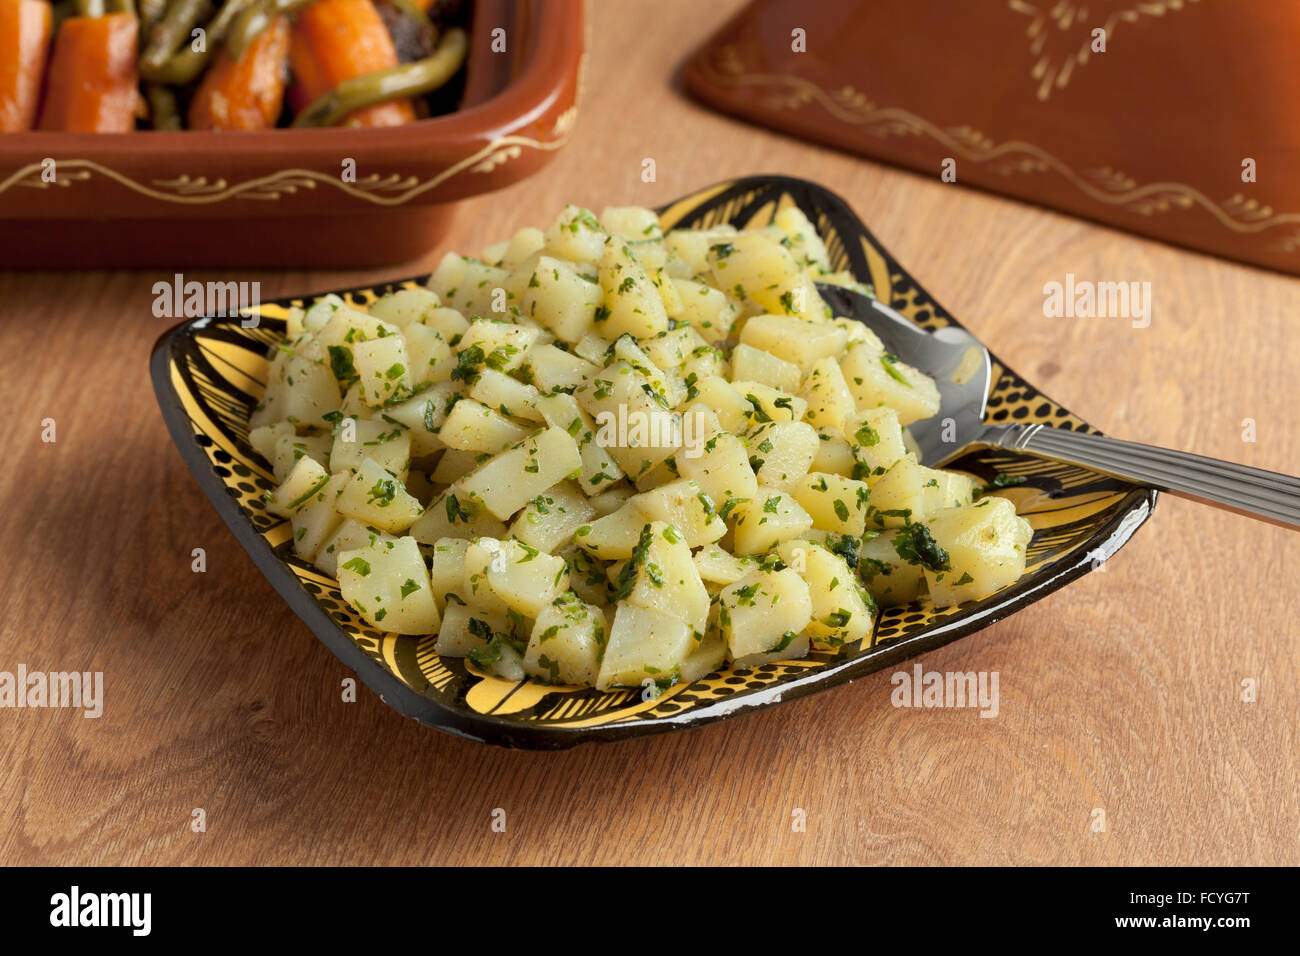 Cuisine marocaine salade de pomme de terre en accompagnement Banque D'Images